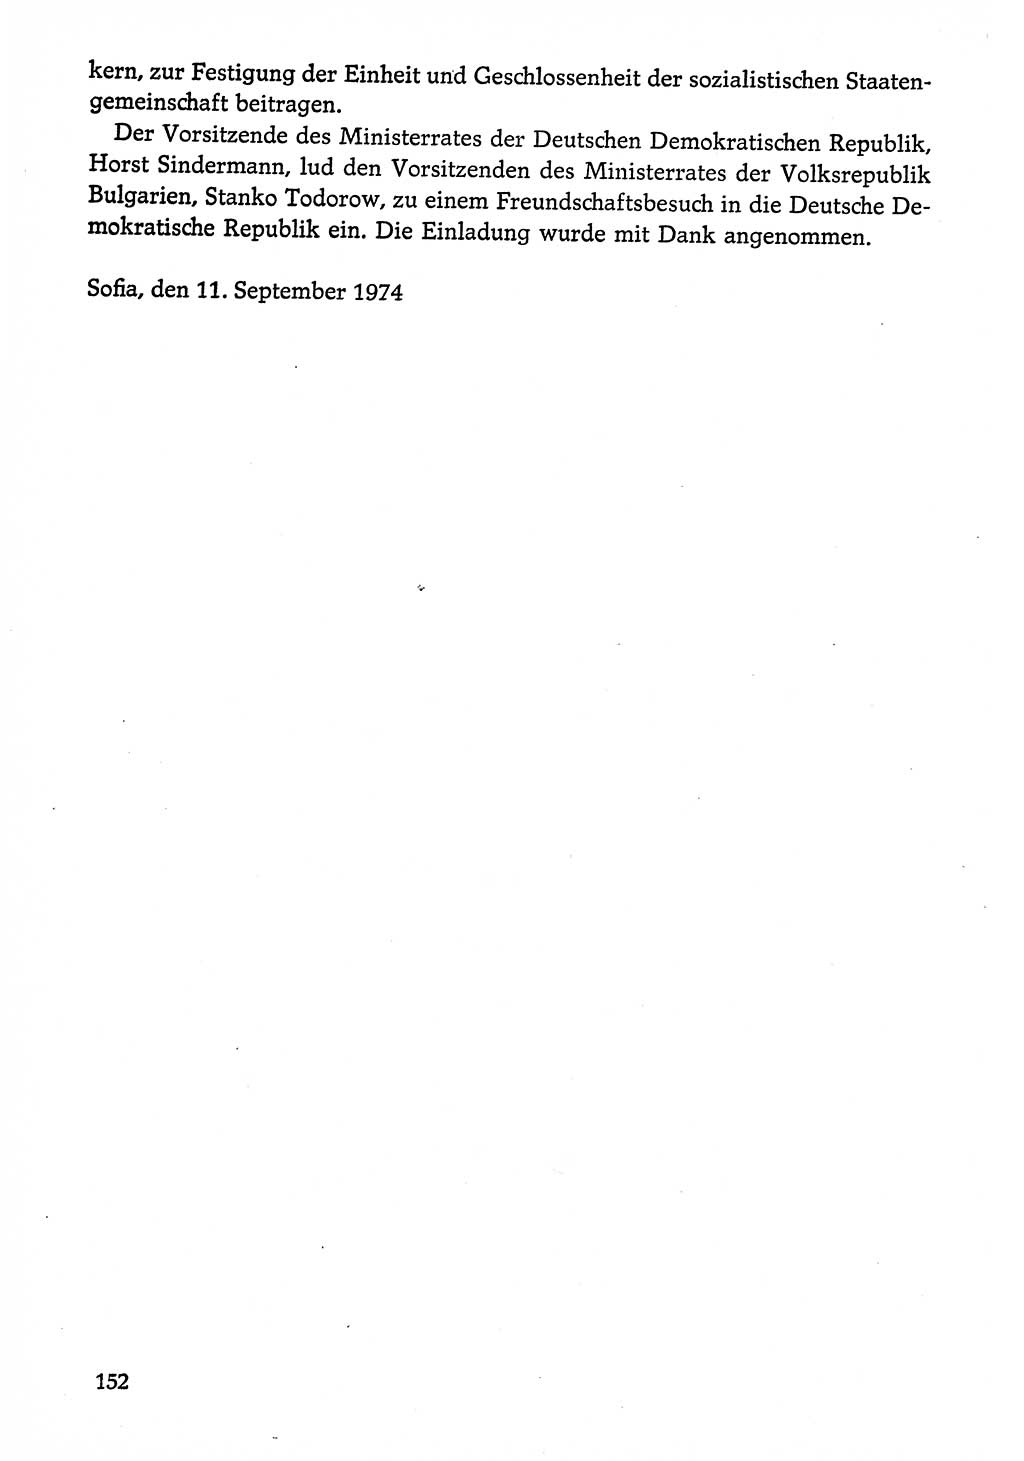 Dokumente der Sozialistischen Einheitspartei Deutschlands (SED) [Deutsche Demokratische Republik (DDR)] 1974-1975, Seite 152 (Dok. SED DDR 1978, Bd. ⅩⅤ, S. 152)